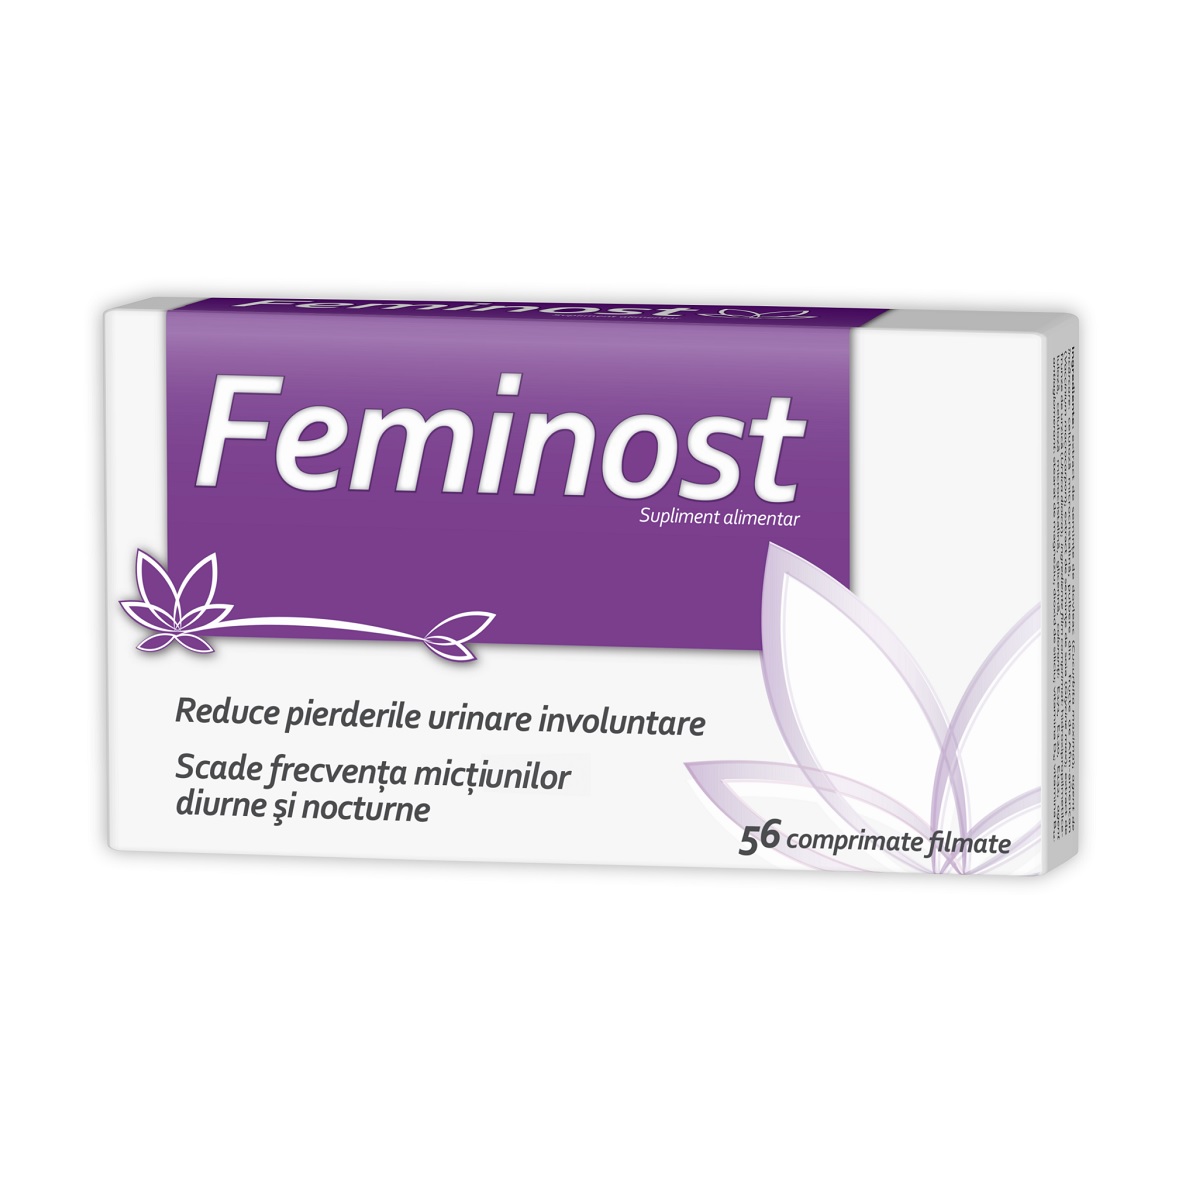 ZDROVIT FEMINOST 56 COMPRIMATE FILMATE COMPRIMATE COMPRIMATE